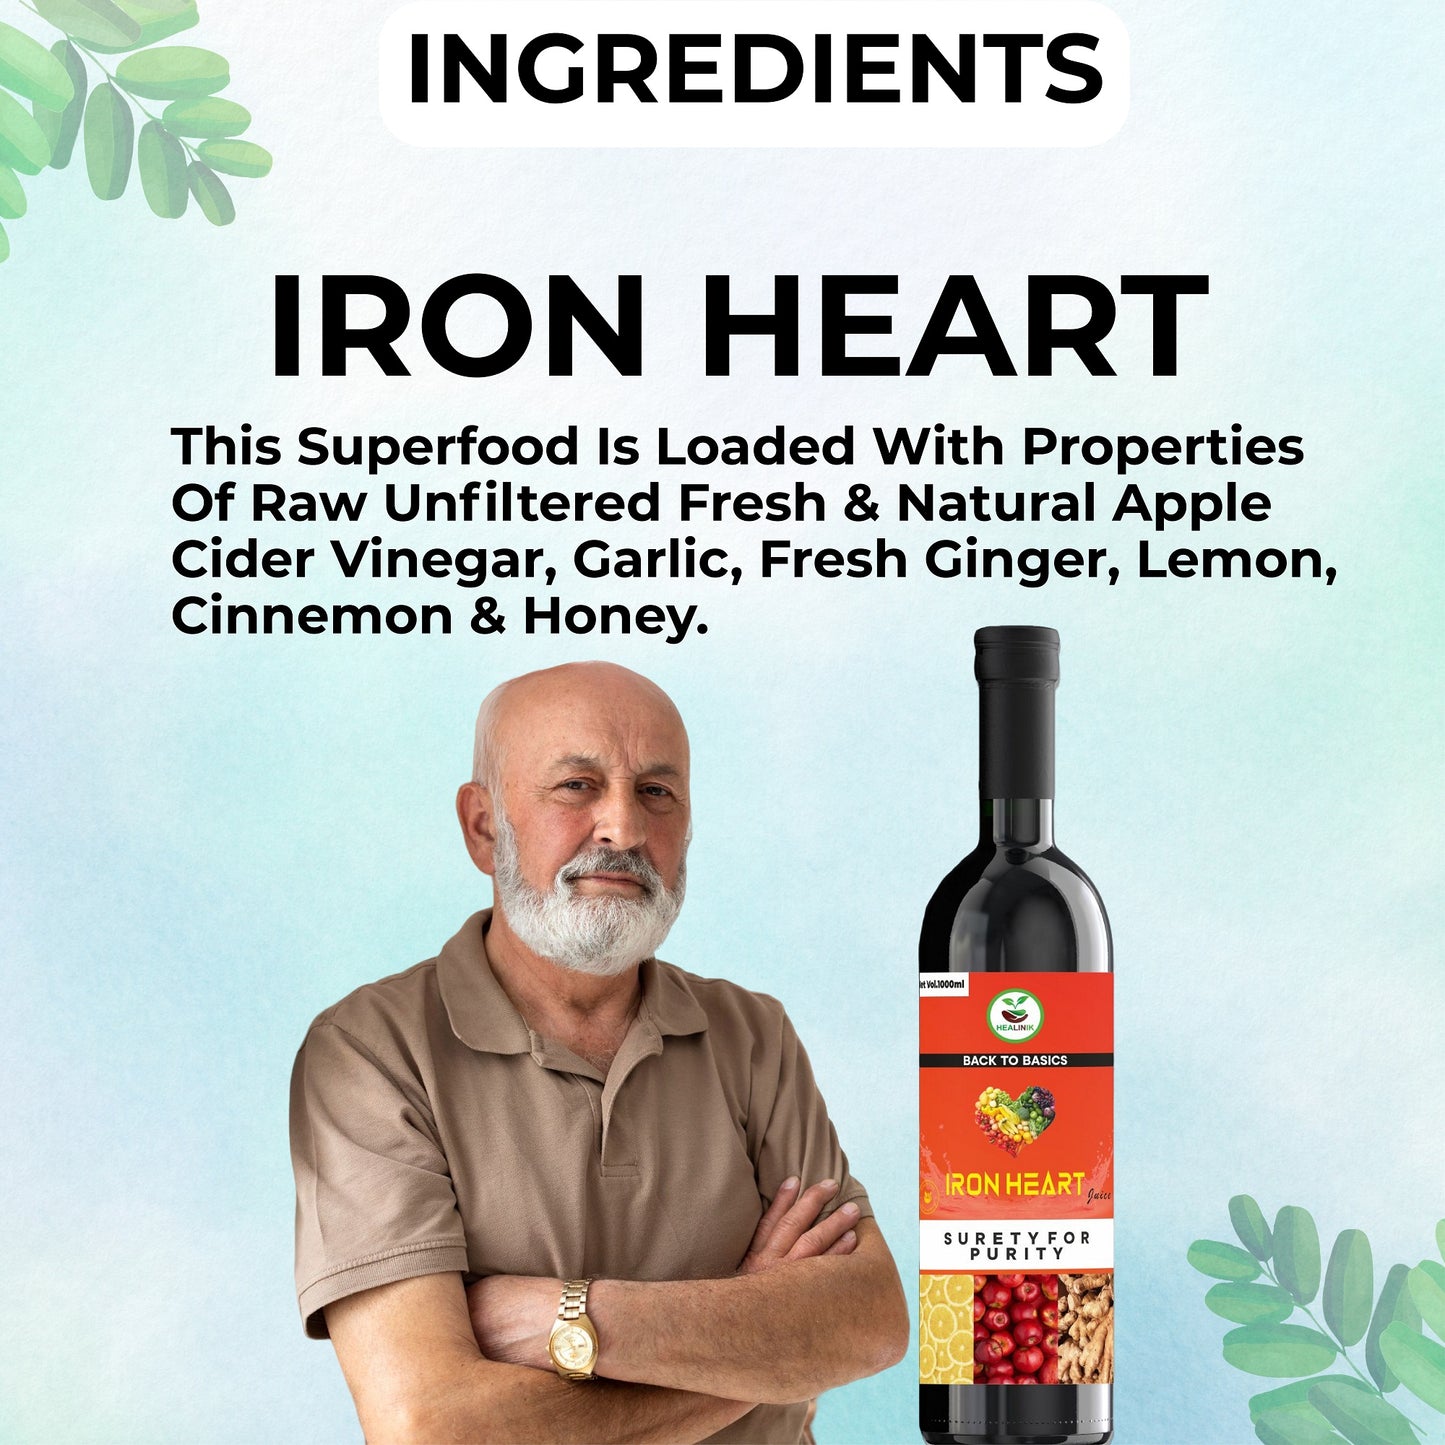 Iron Heart Care Juice - healinik